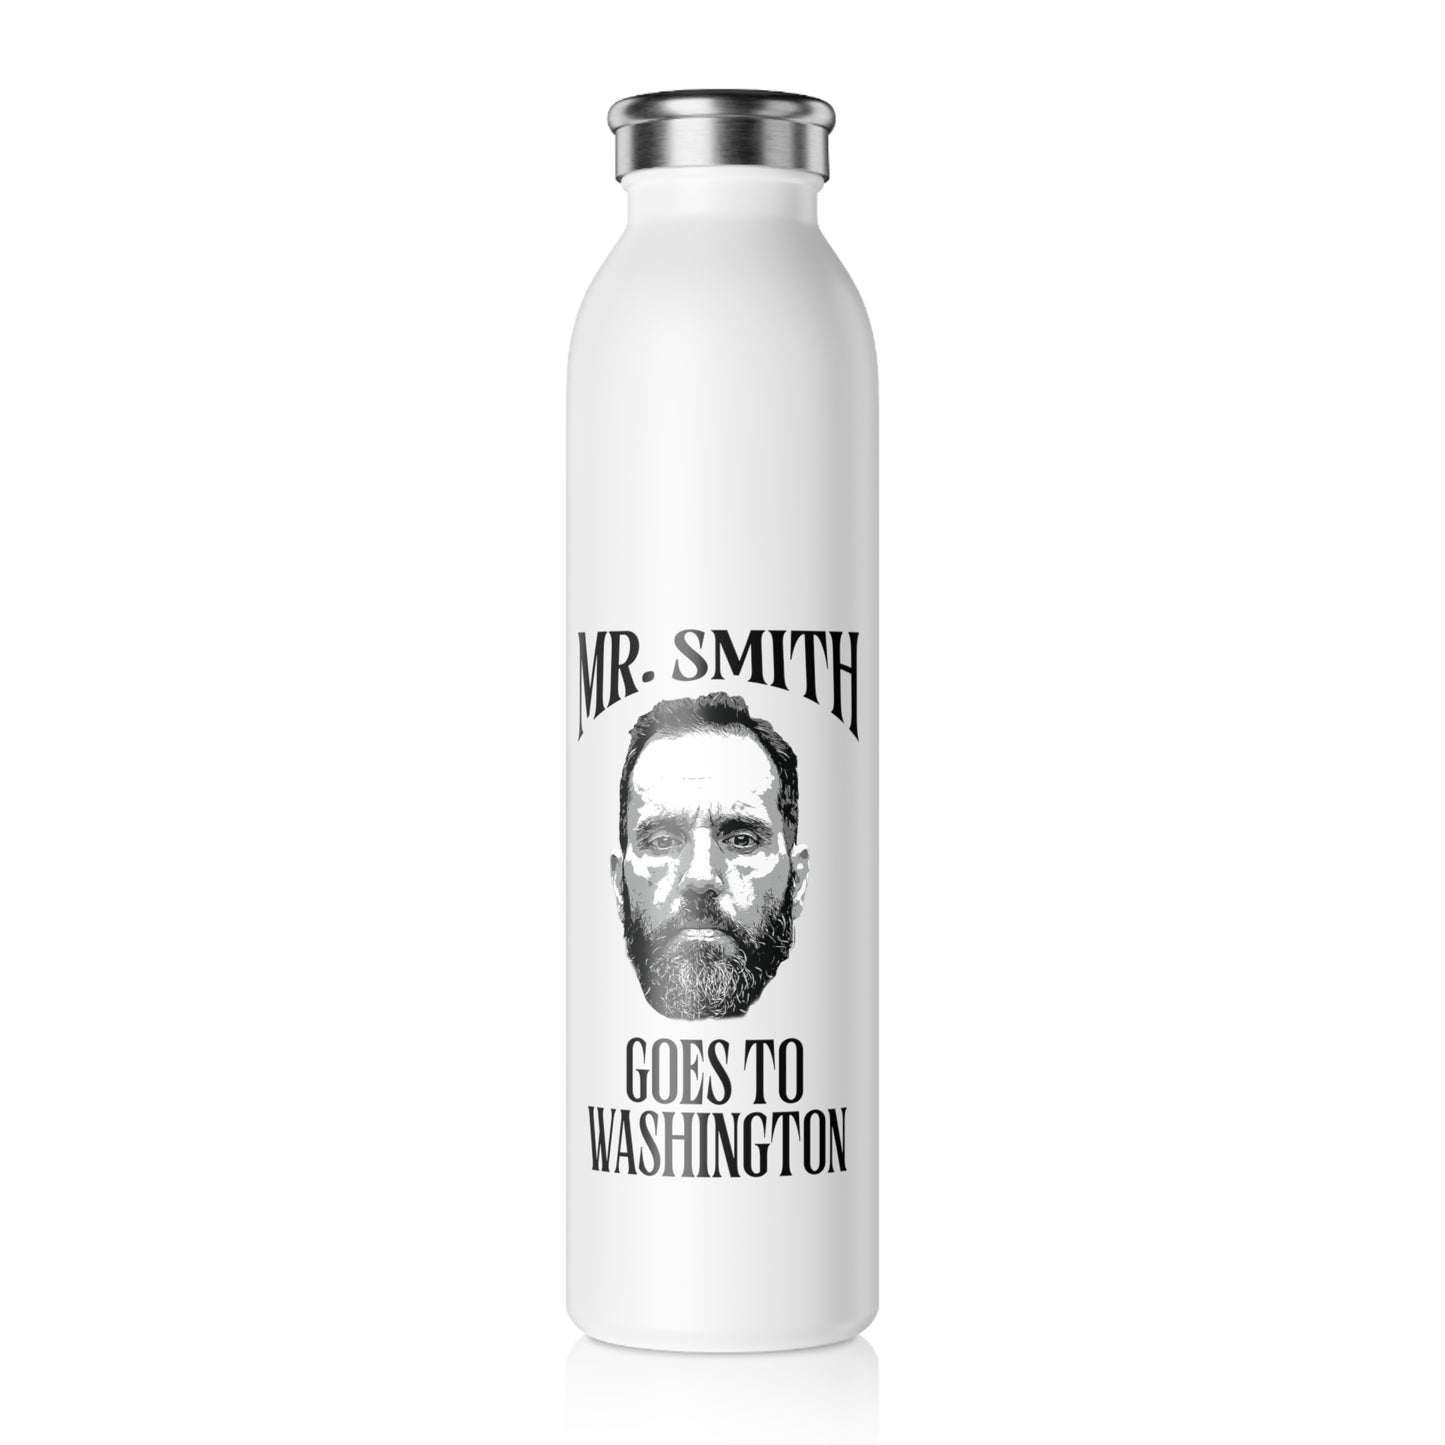 MR. SMITH GOES TO WASHINGTON - Slim Water Bottle